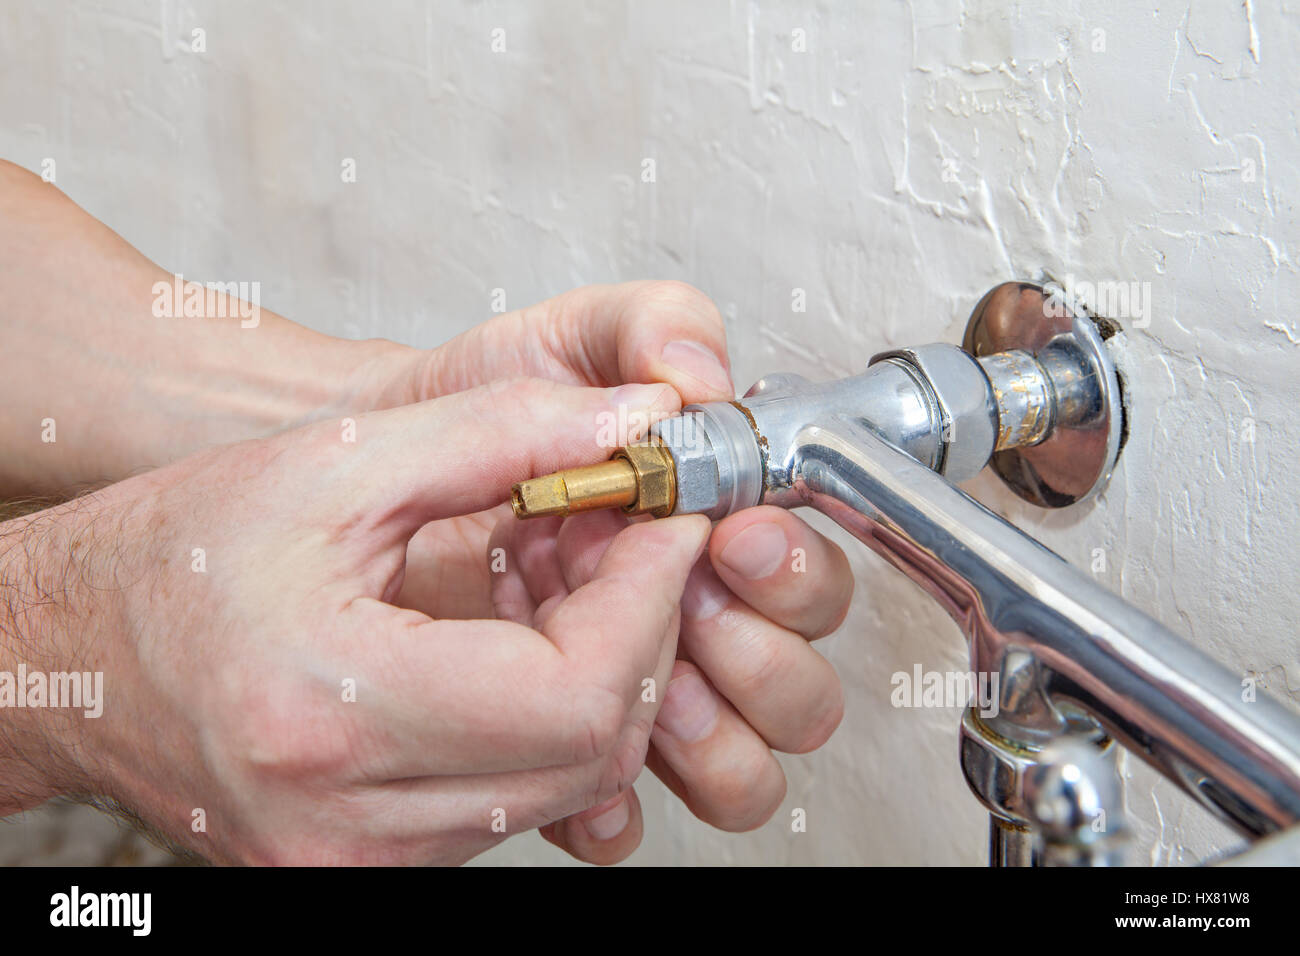 Zwei Griff Küche Wasserhahn reparieren, close-up Klempner Hände Ersatz Wasserhahn  Ventil Stockfotografie - Alamy